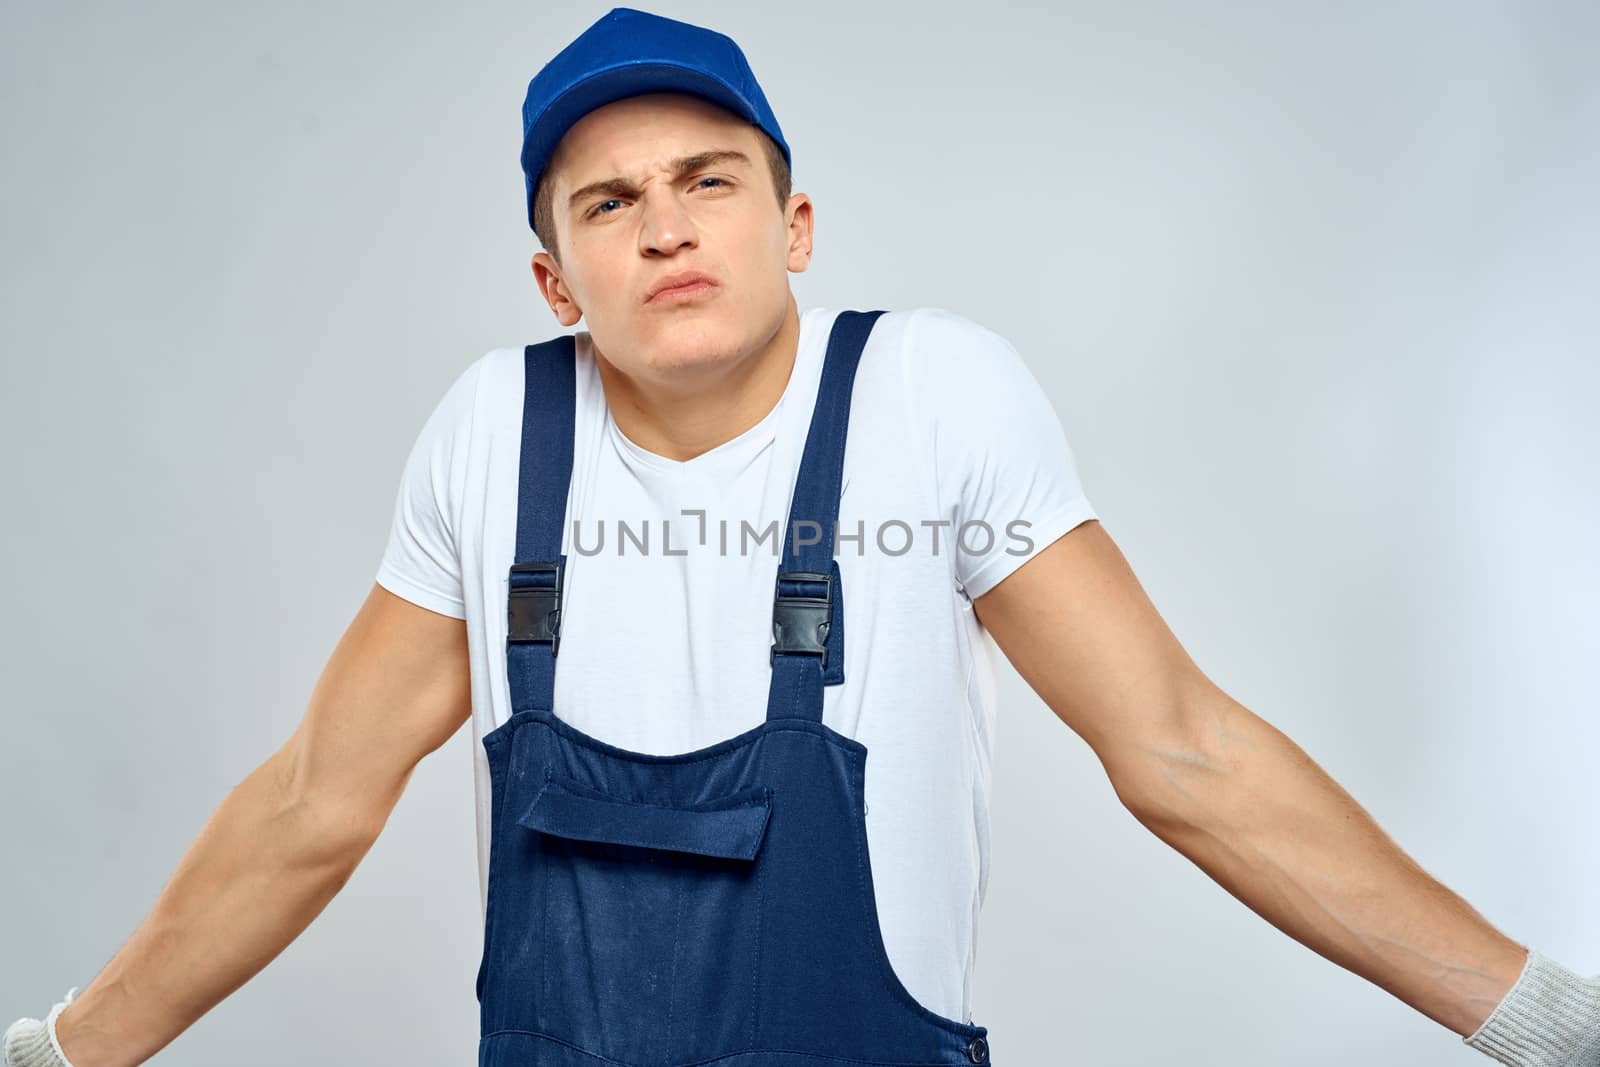 Man worker in forklift uniform delivery service light background by SHOTPRIME